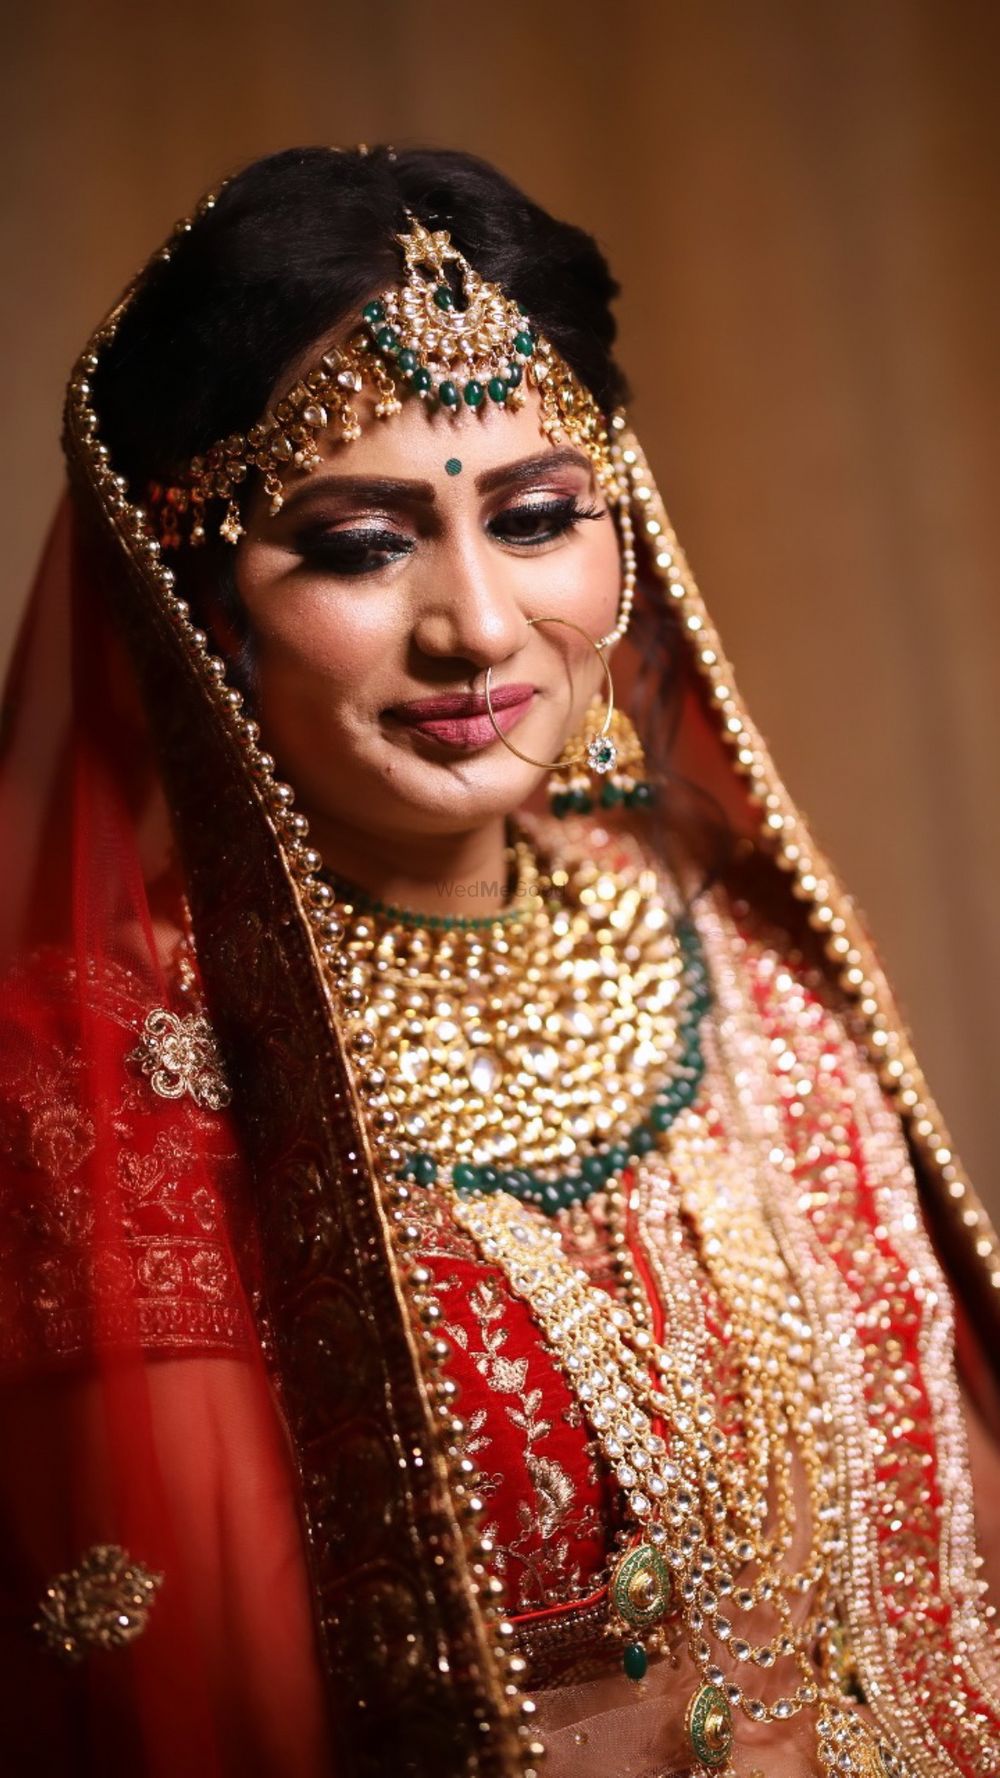 Photo By Makeup Artist Shaifali - Bridal Makeup